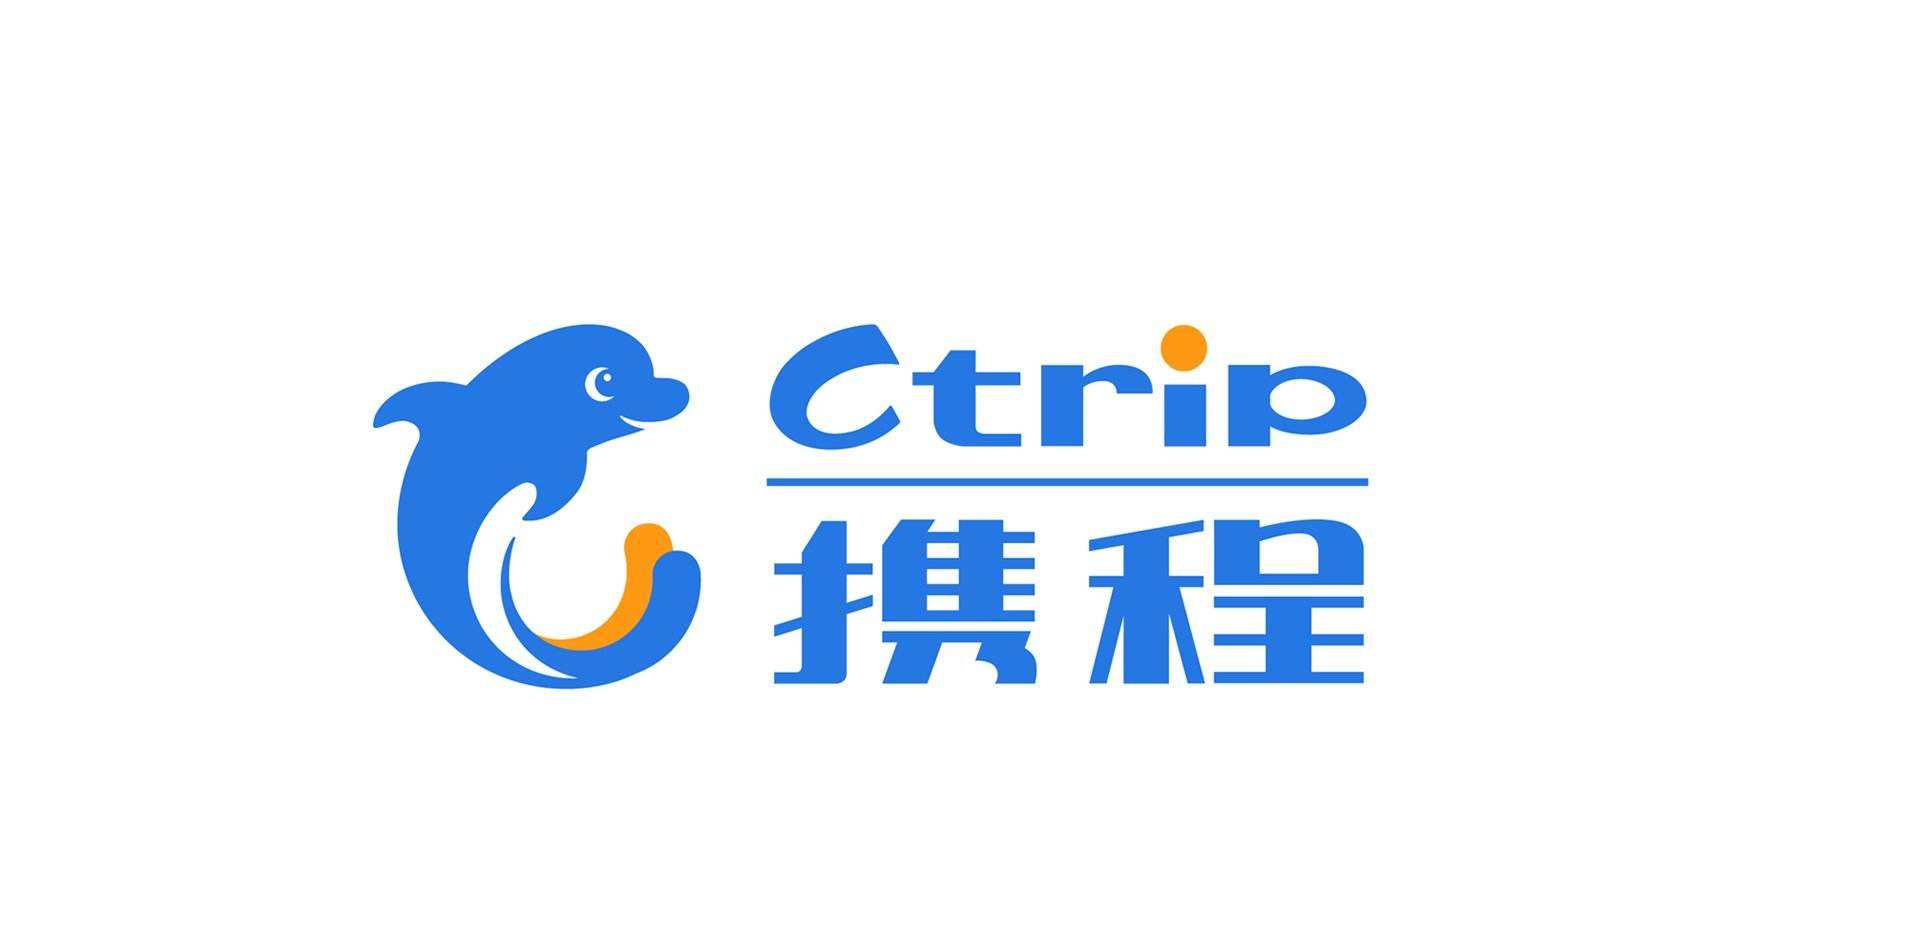 携程网1999年在上海成立,是几家中最早做旅游电商平台的公司